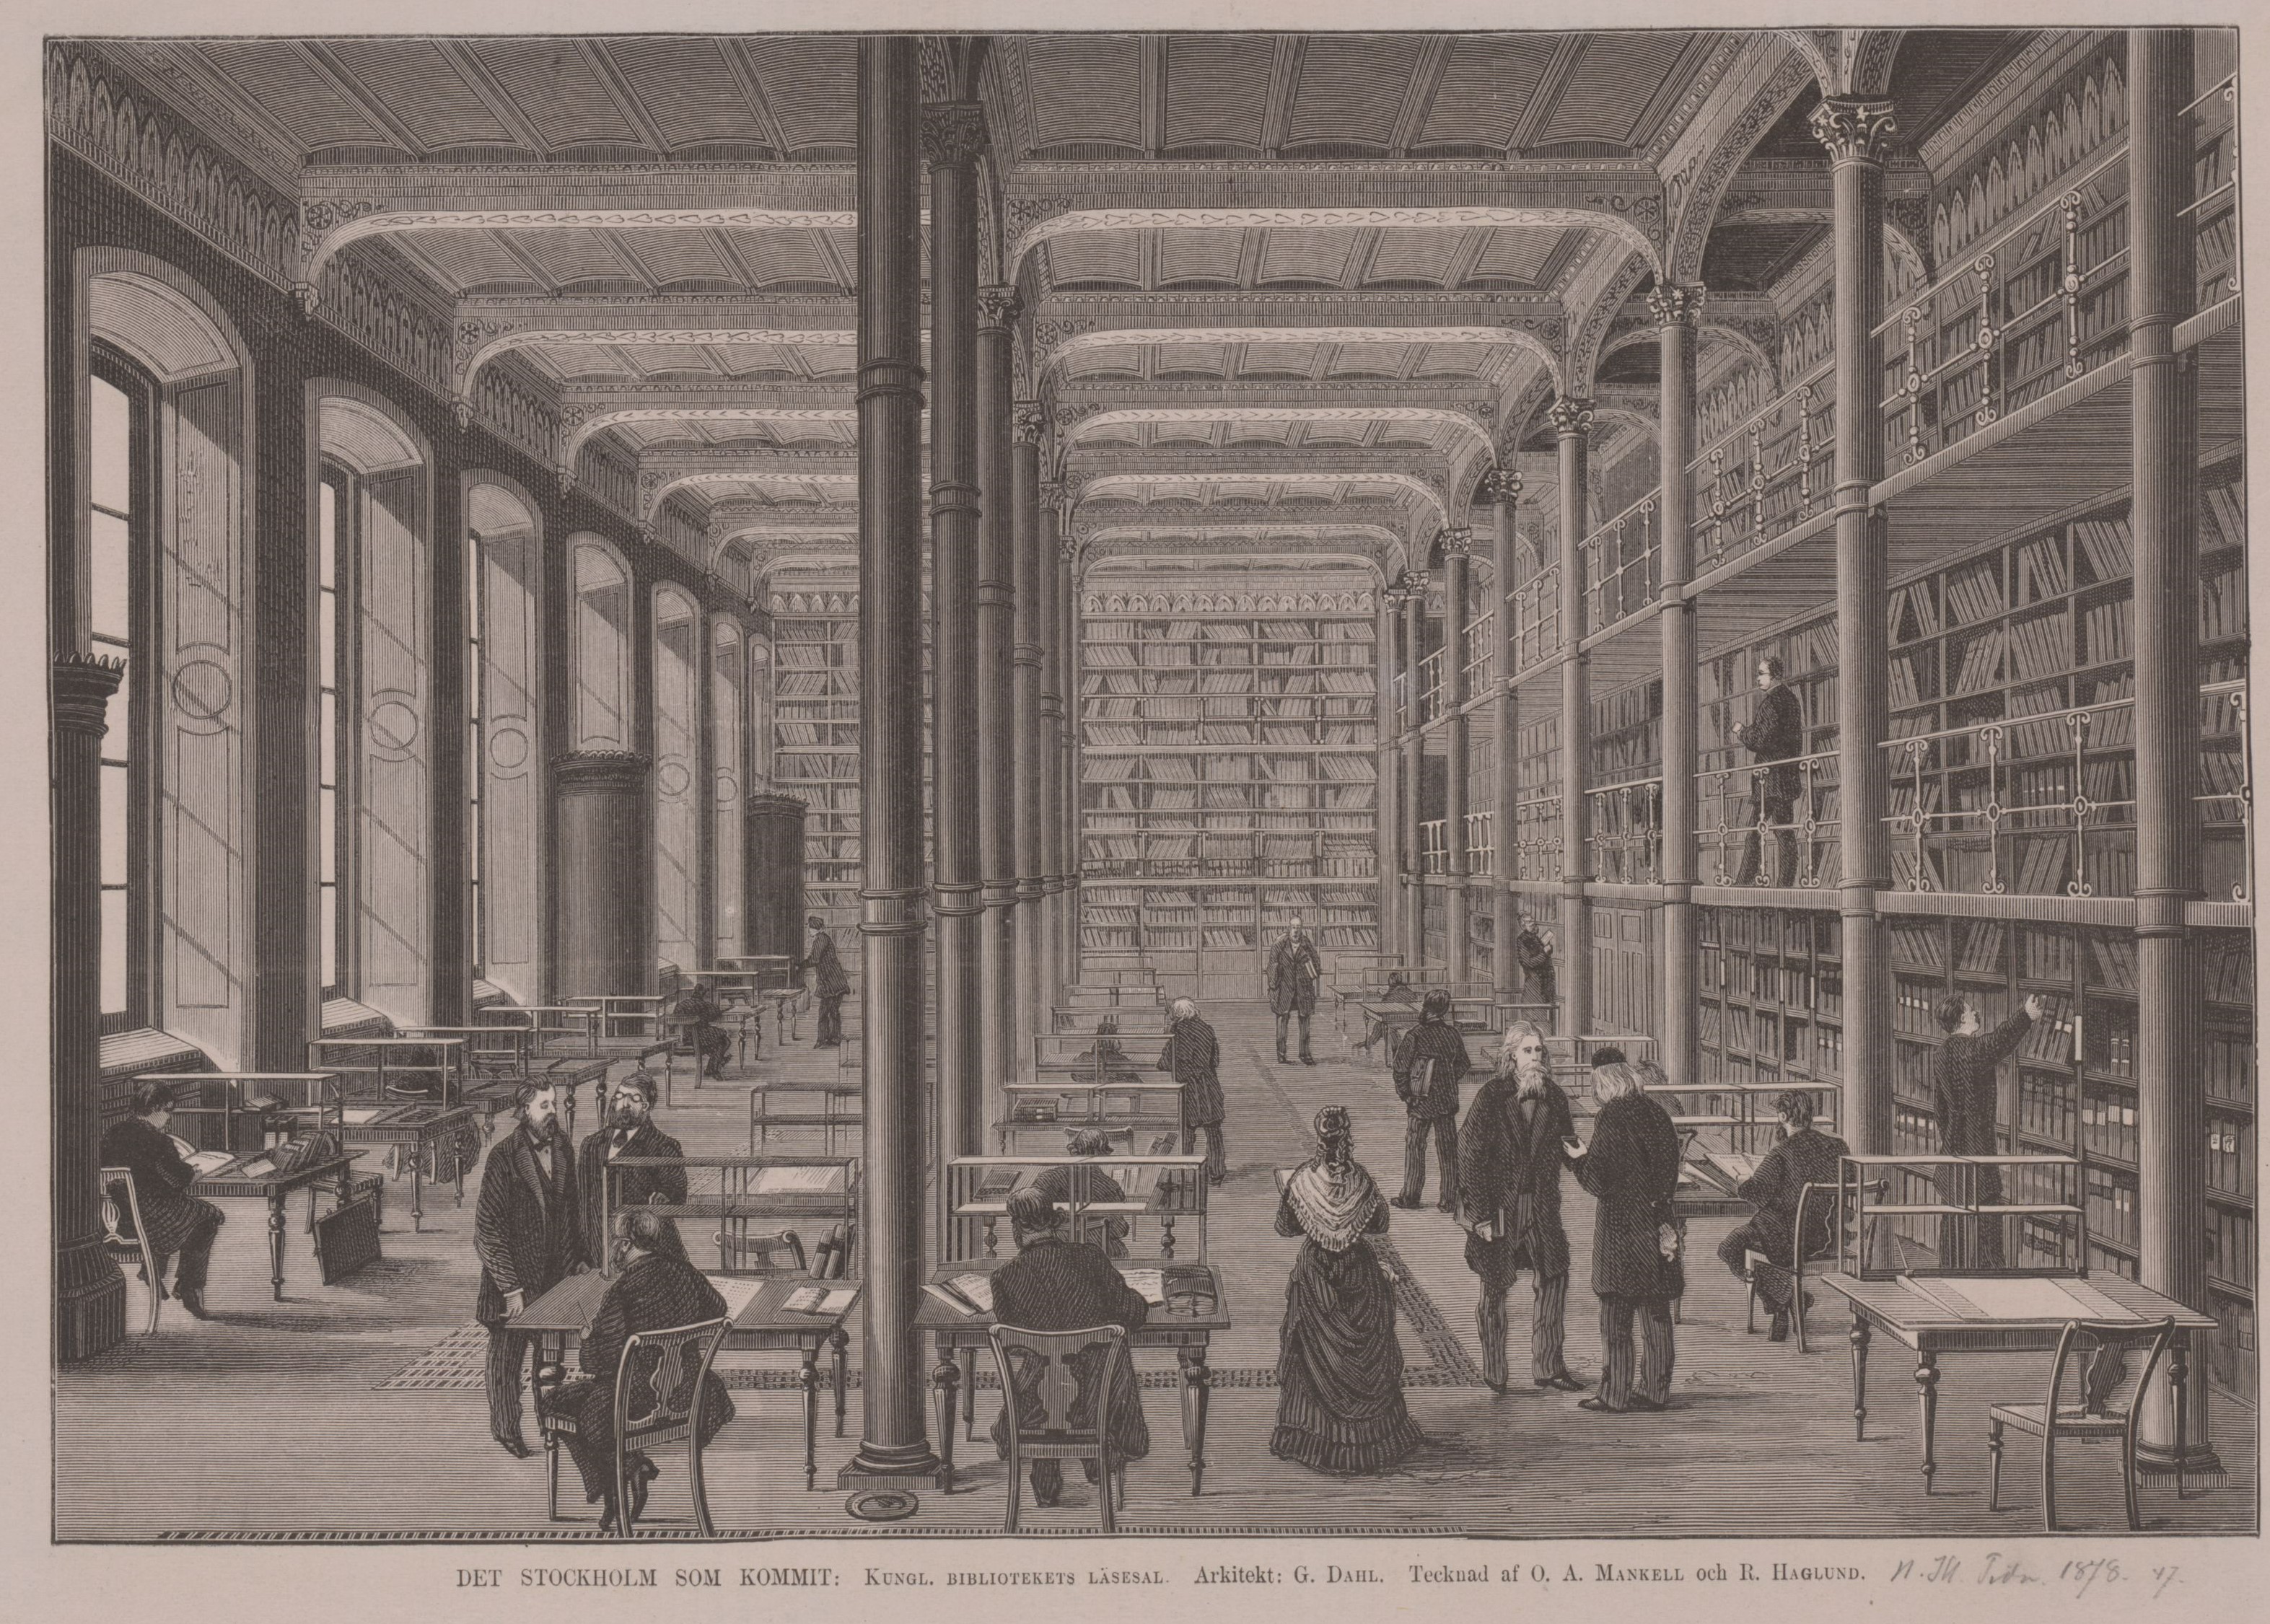 Svartvitt träsnitt föreställande en stor läsesal med höga pelare och fönster. Vid borden sitter människor och studerar, till höger i bilden står en långhårig man med långt skägg. 